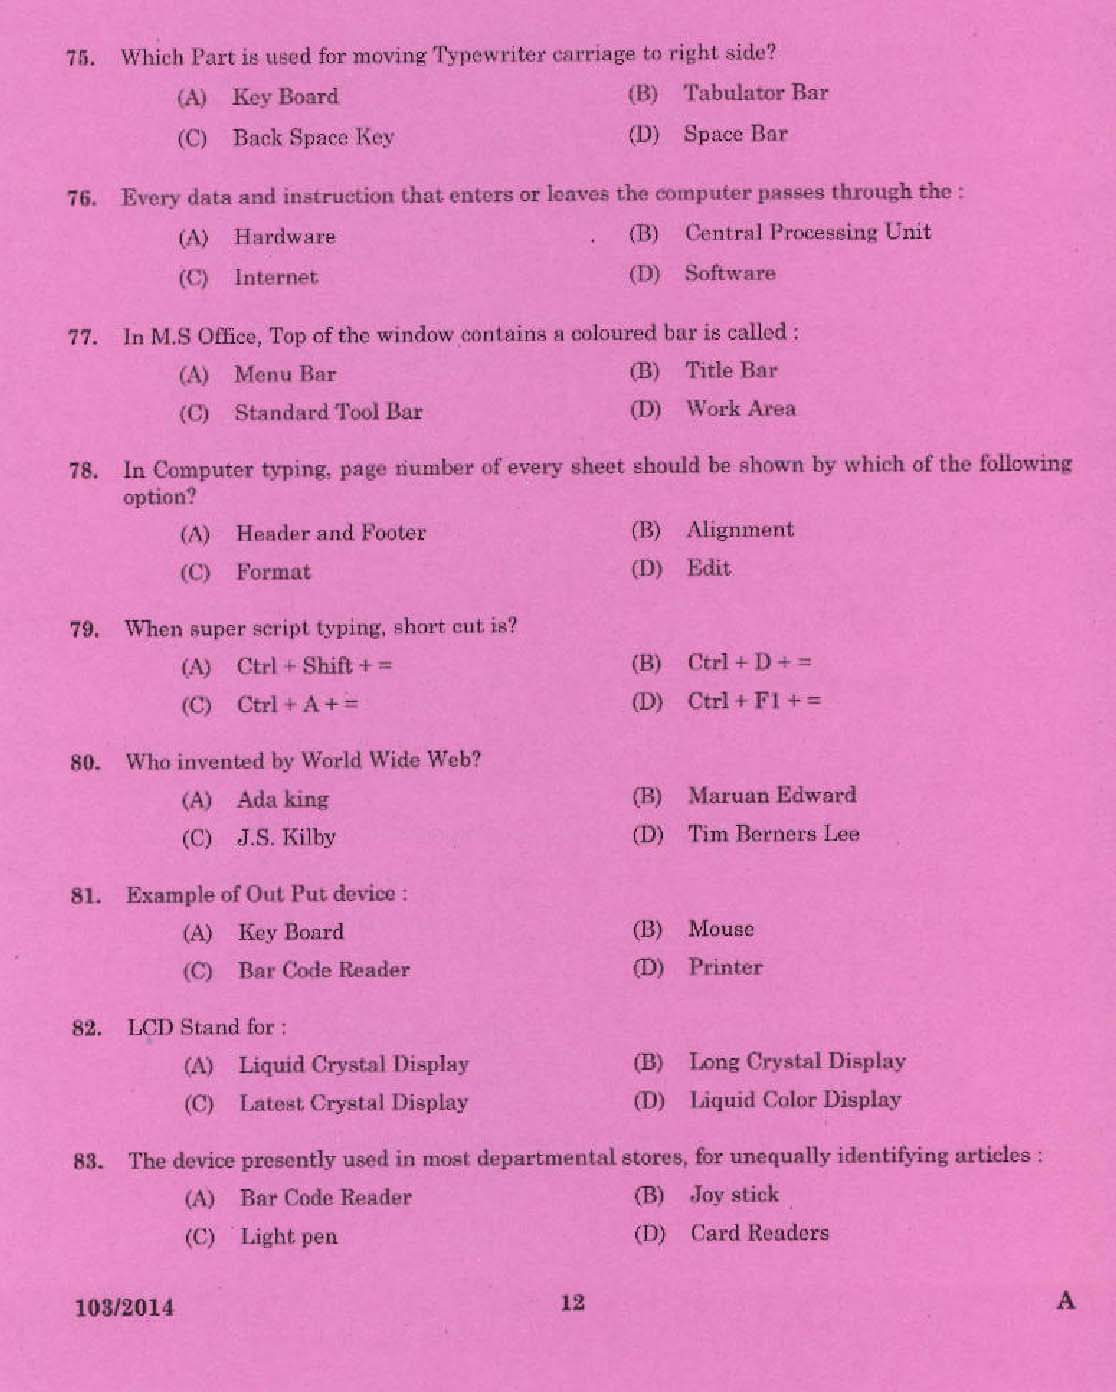 Kerala PSC Stenographer Grade IV Exam 2014 Question Paper Code 1032014 10